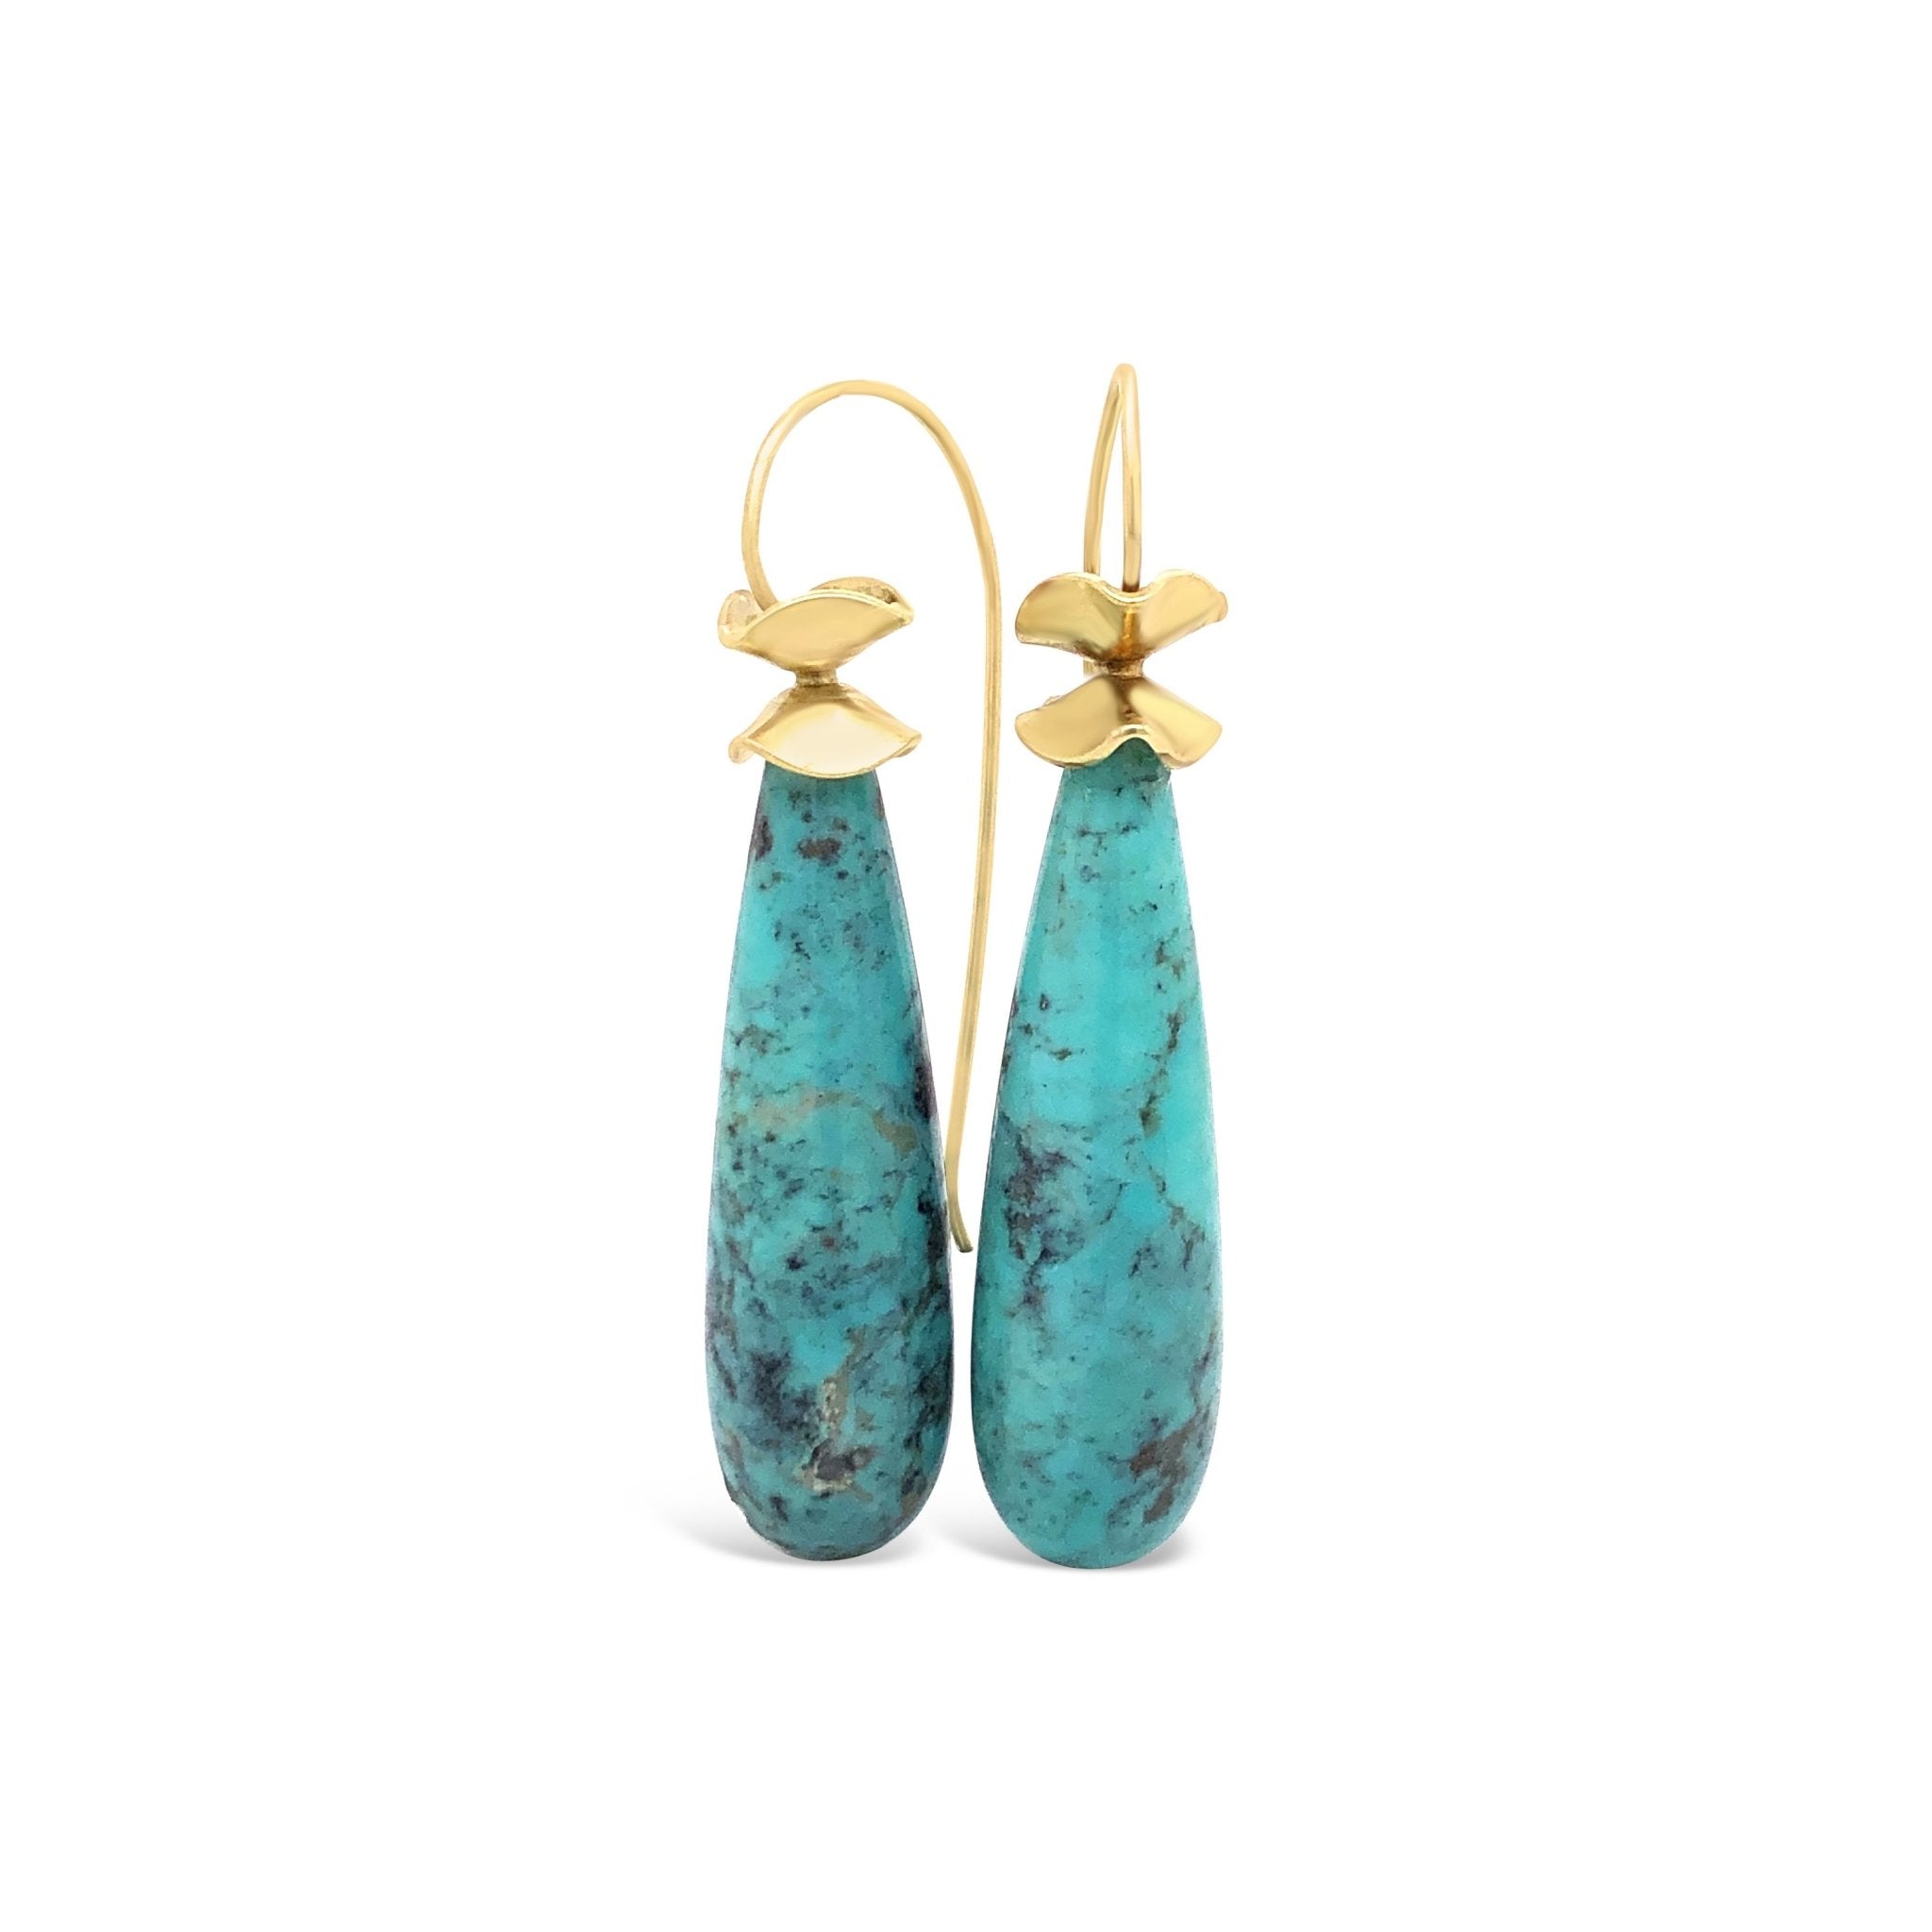 Sierra Winter Jewelry Thelma & Louise Hoop Earrings - Gold Vermeil/Turquoise